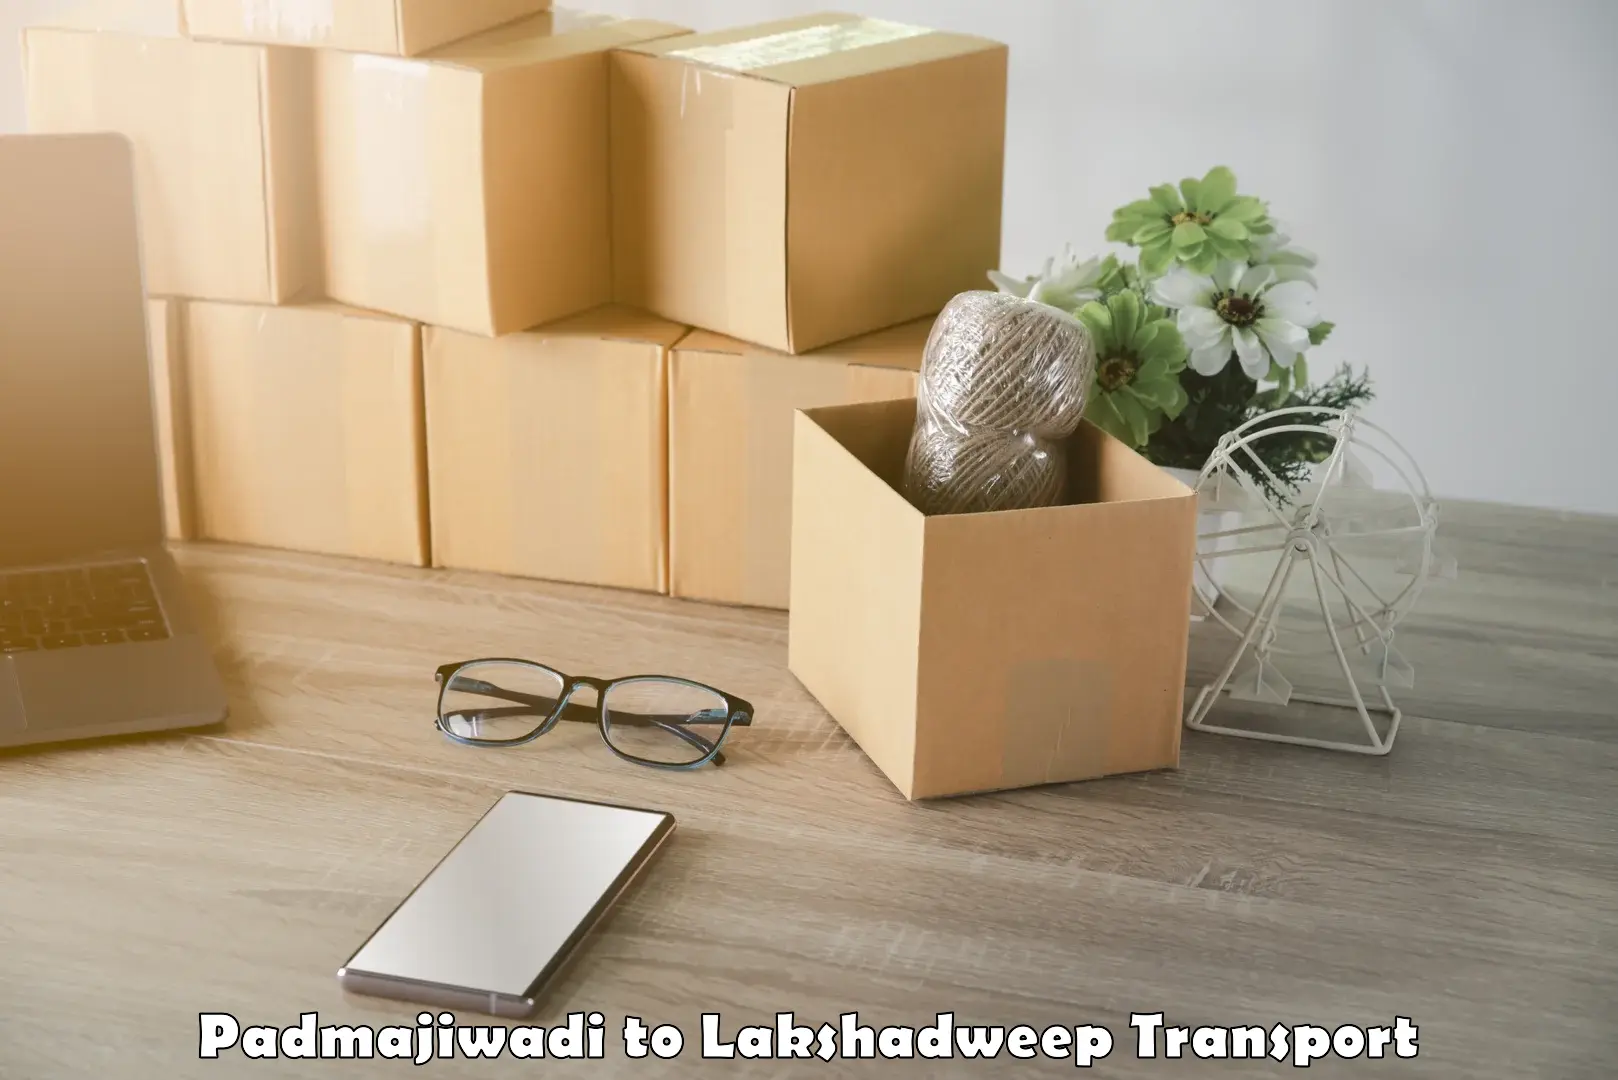 Nationwide transport services Padmajiwadi to Lakshadweep